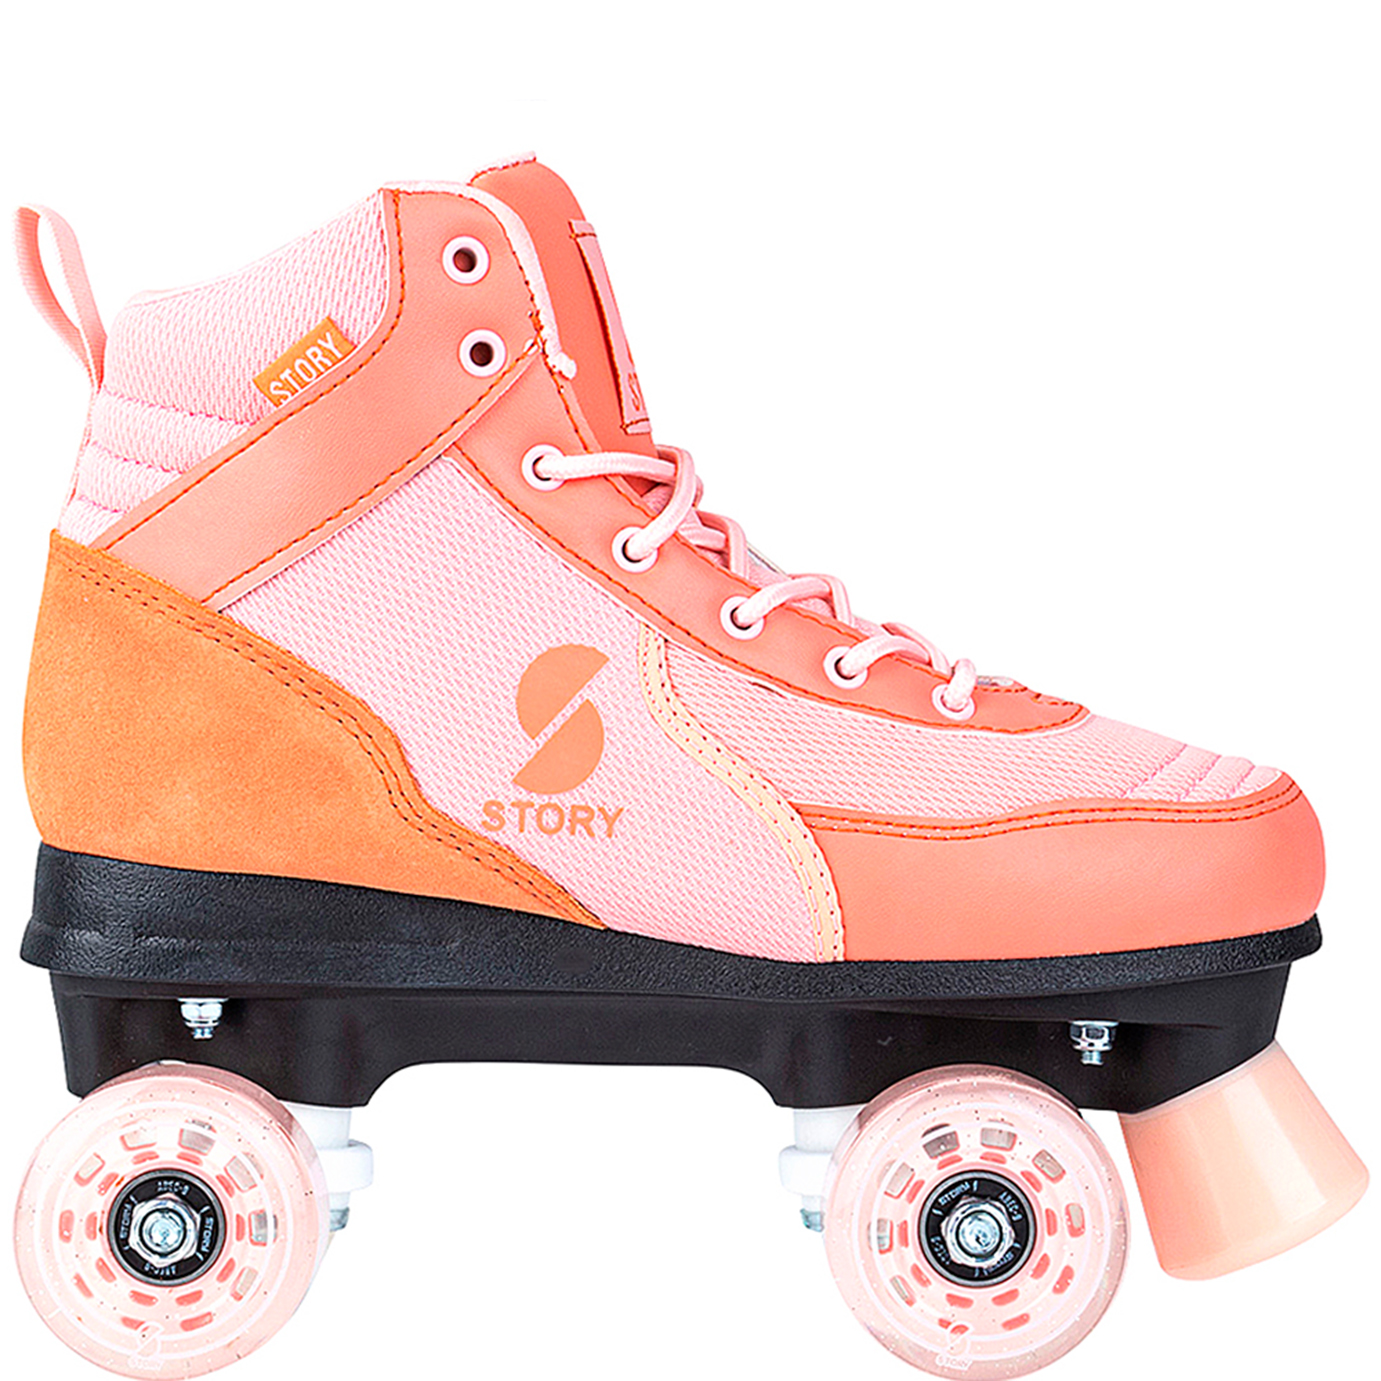 https://euroskateshop.uk/story-cooper-side-by-side-roller-skates.html?2=799